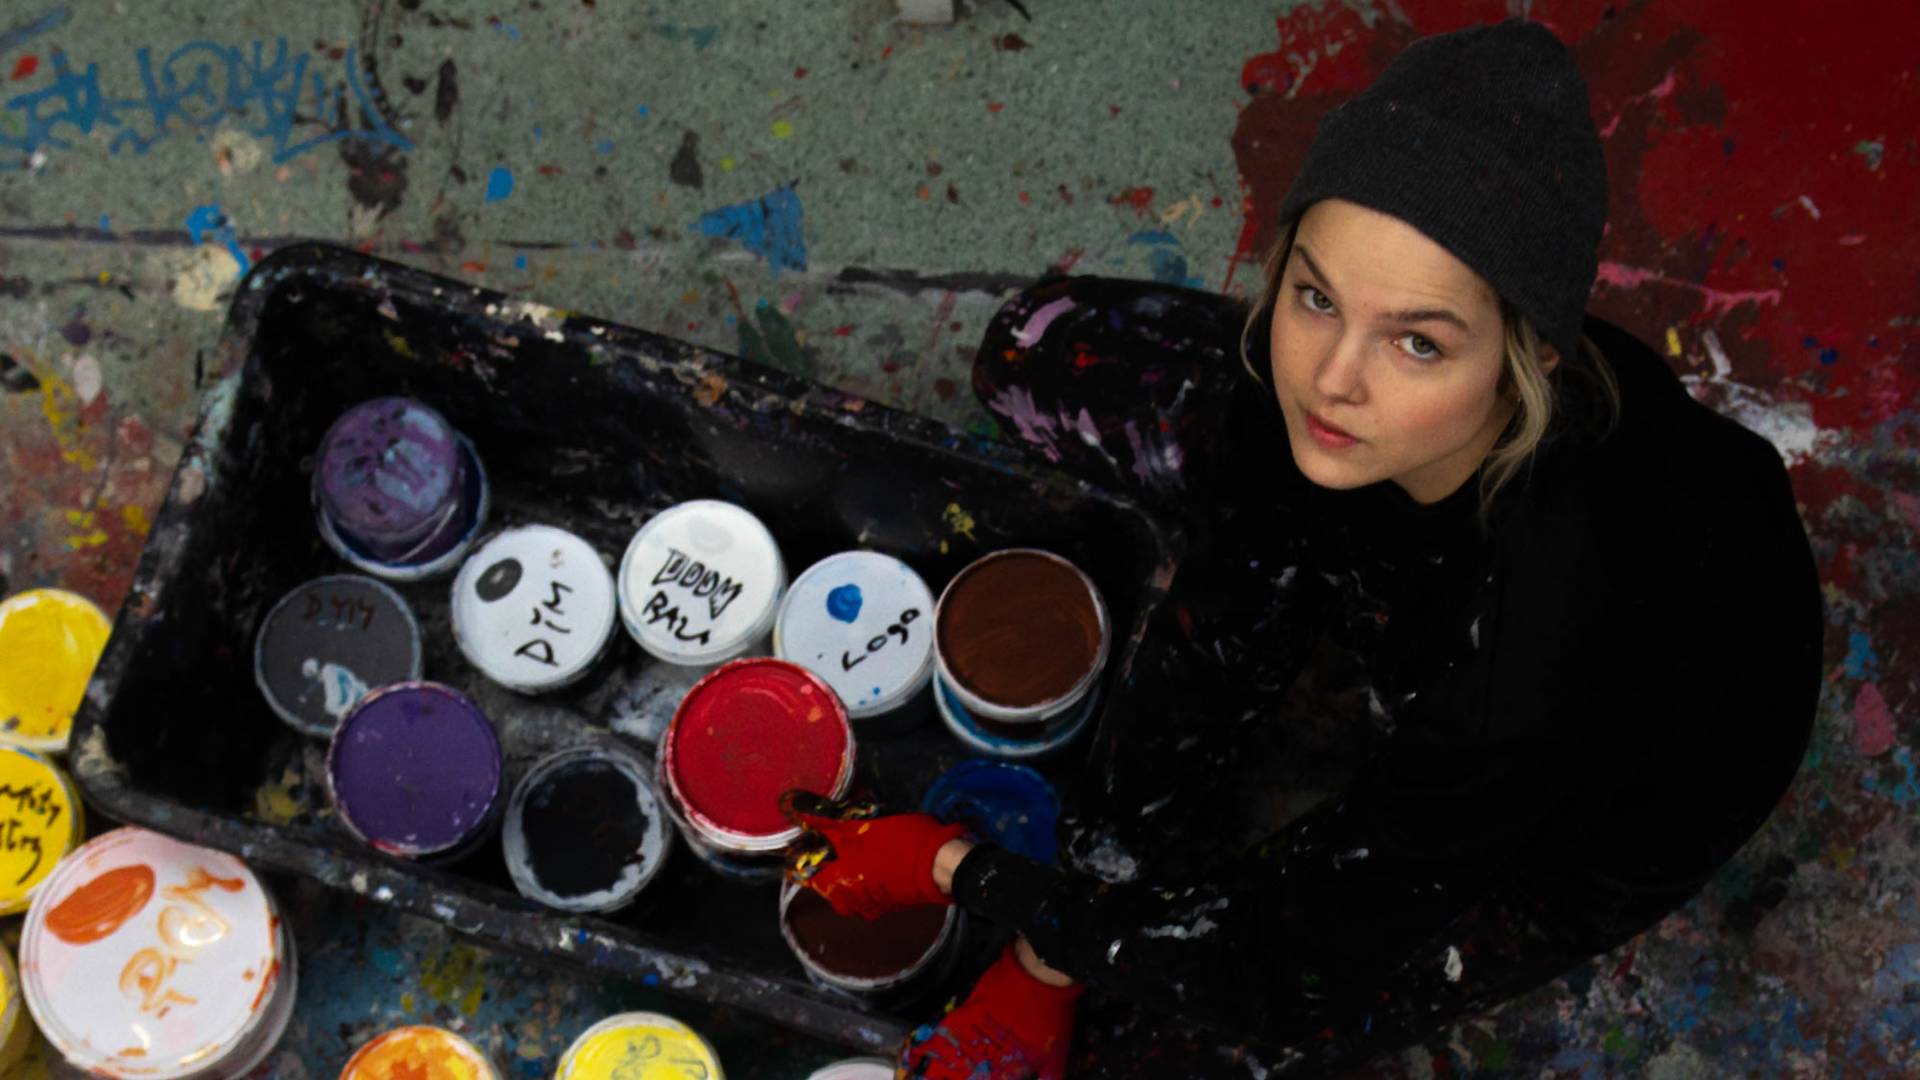 Emilia od 6 lat maluje murale. "Wiedźmin był jednym z naszych najtrudniejszych projektów"